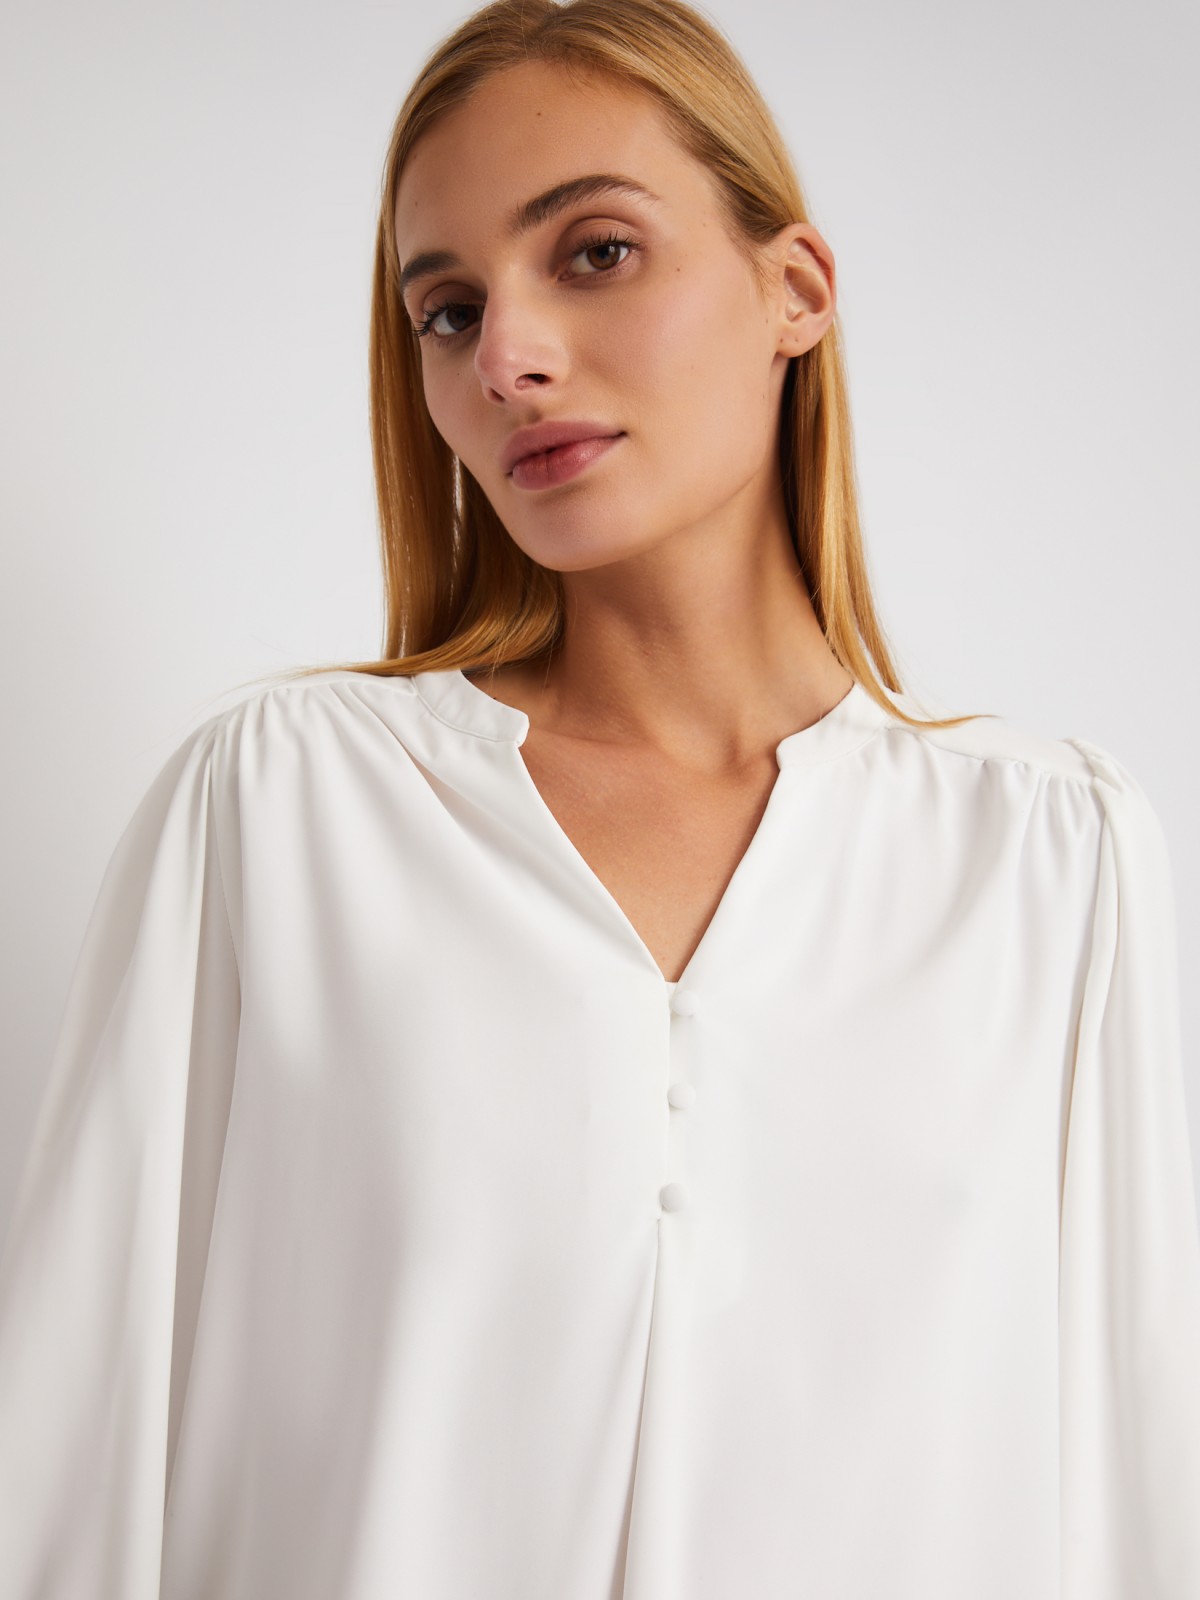 Блузка с объёмными рукавами и V-образным вырезом на груди zolla 024121159122, цвет молоко, размер XS - фото 5